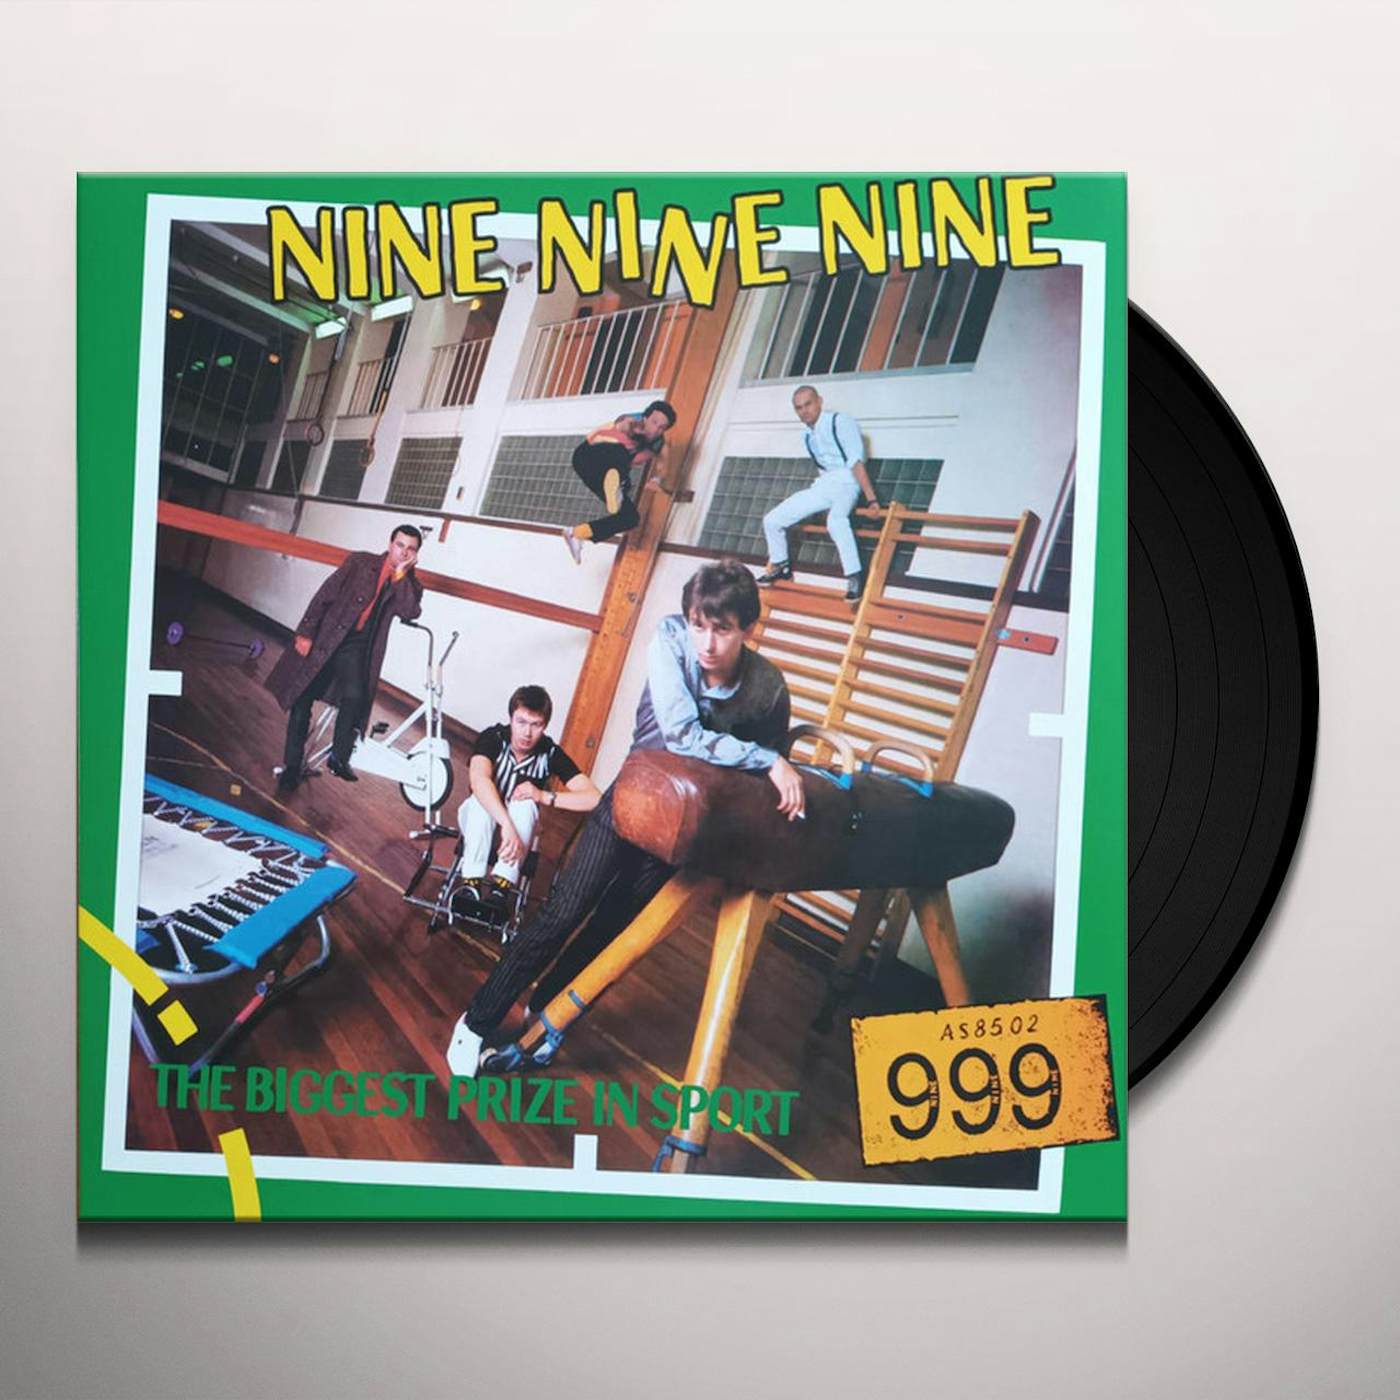 999 BIGGEST PRIZE IN SPORT Vinyl Record